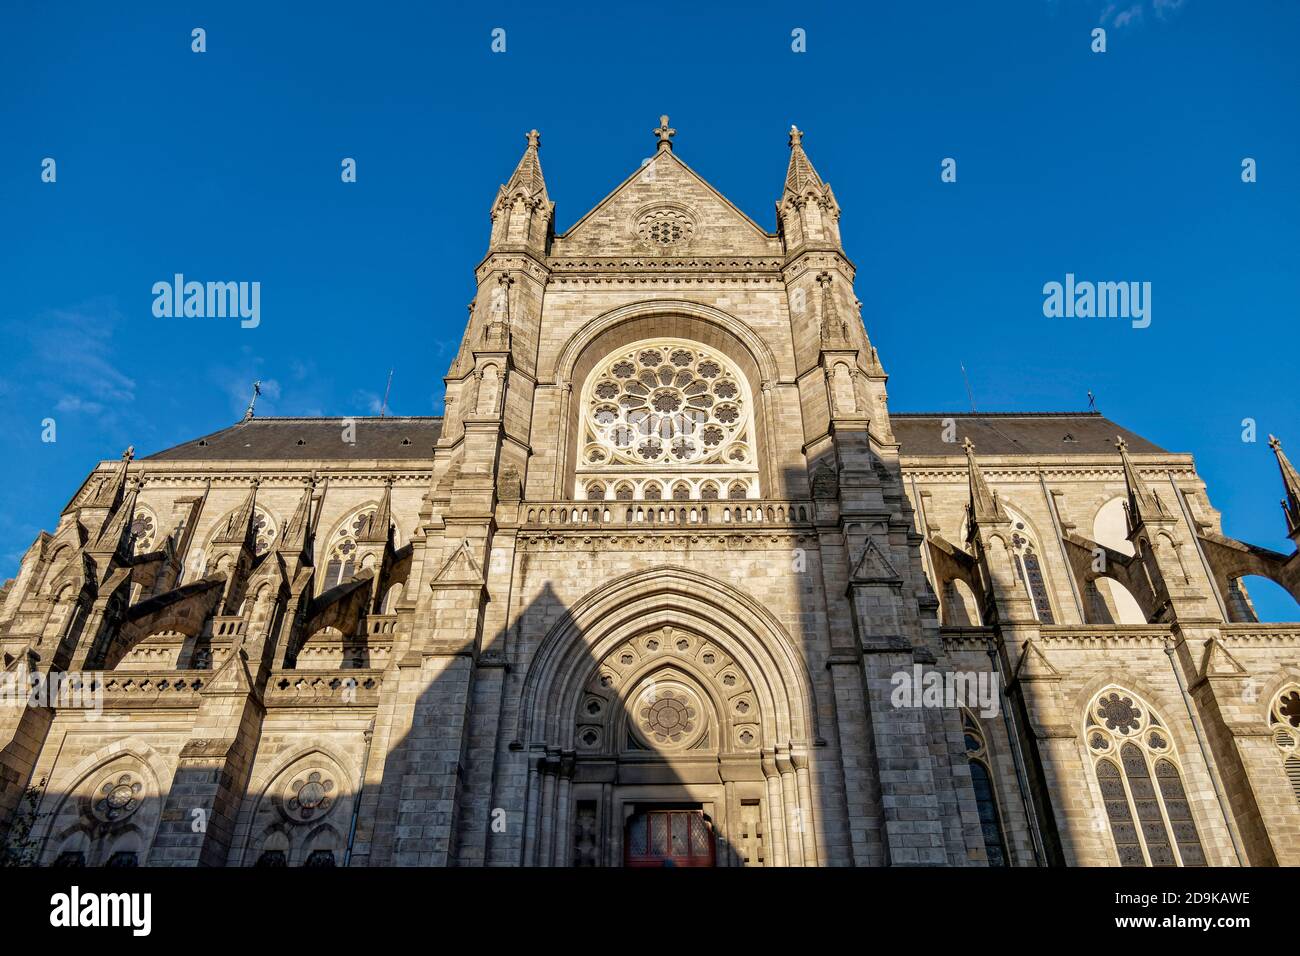 Rennes, Frankreich - die Kathedrale Saint-Pierre de Rennes im alten Stadtzentrum Rennes, Kathedrale, Bretagne, Frankreich Stockfoto